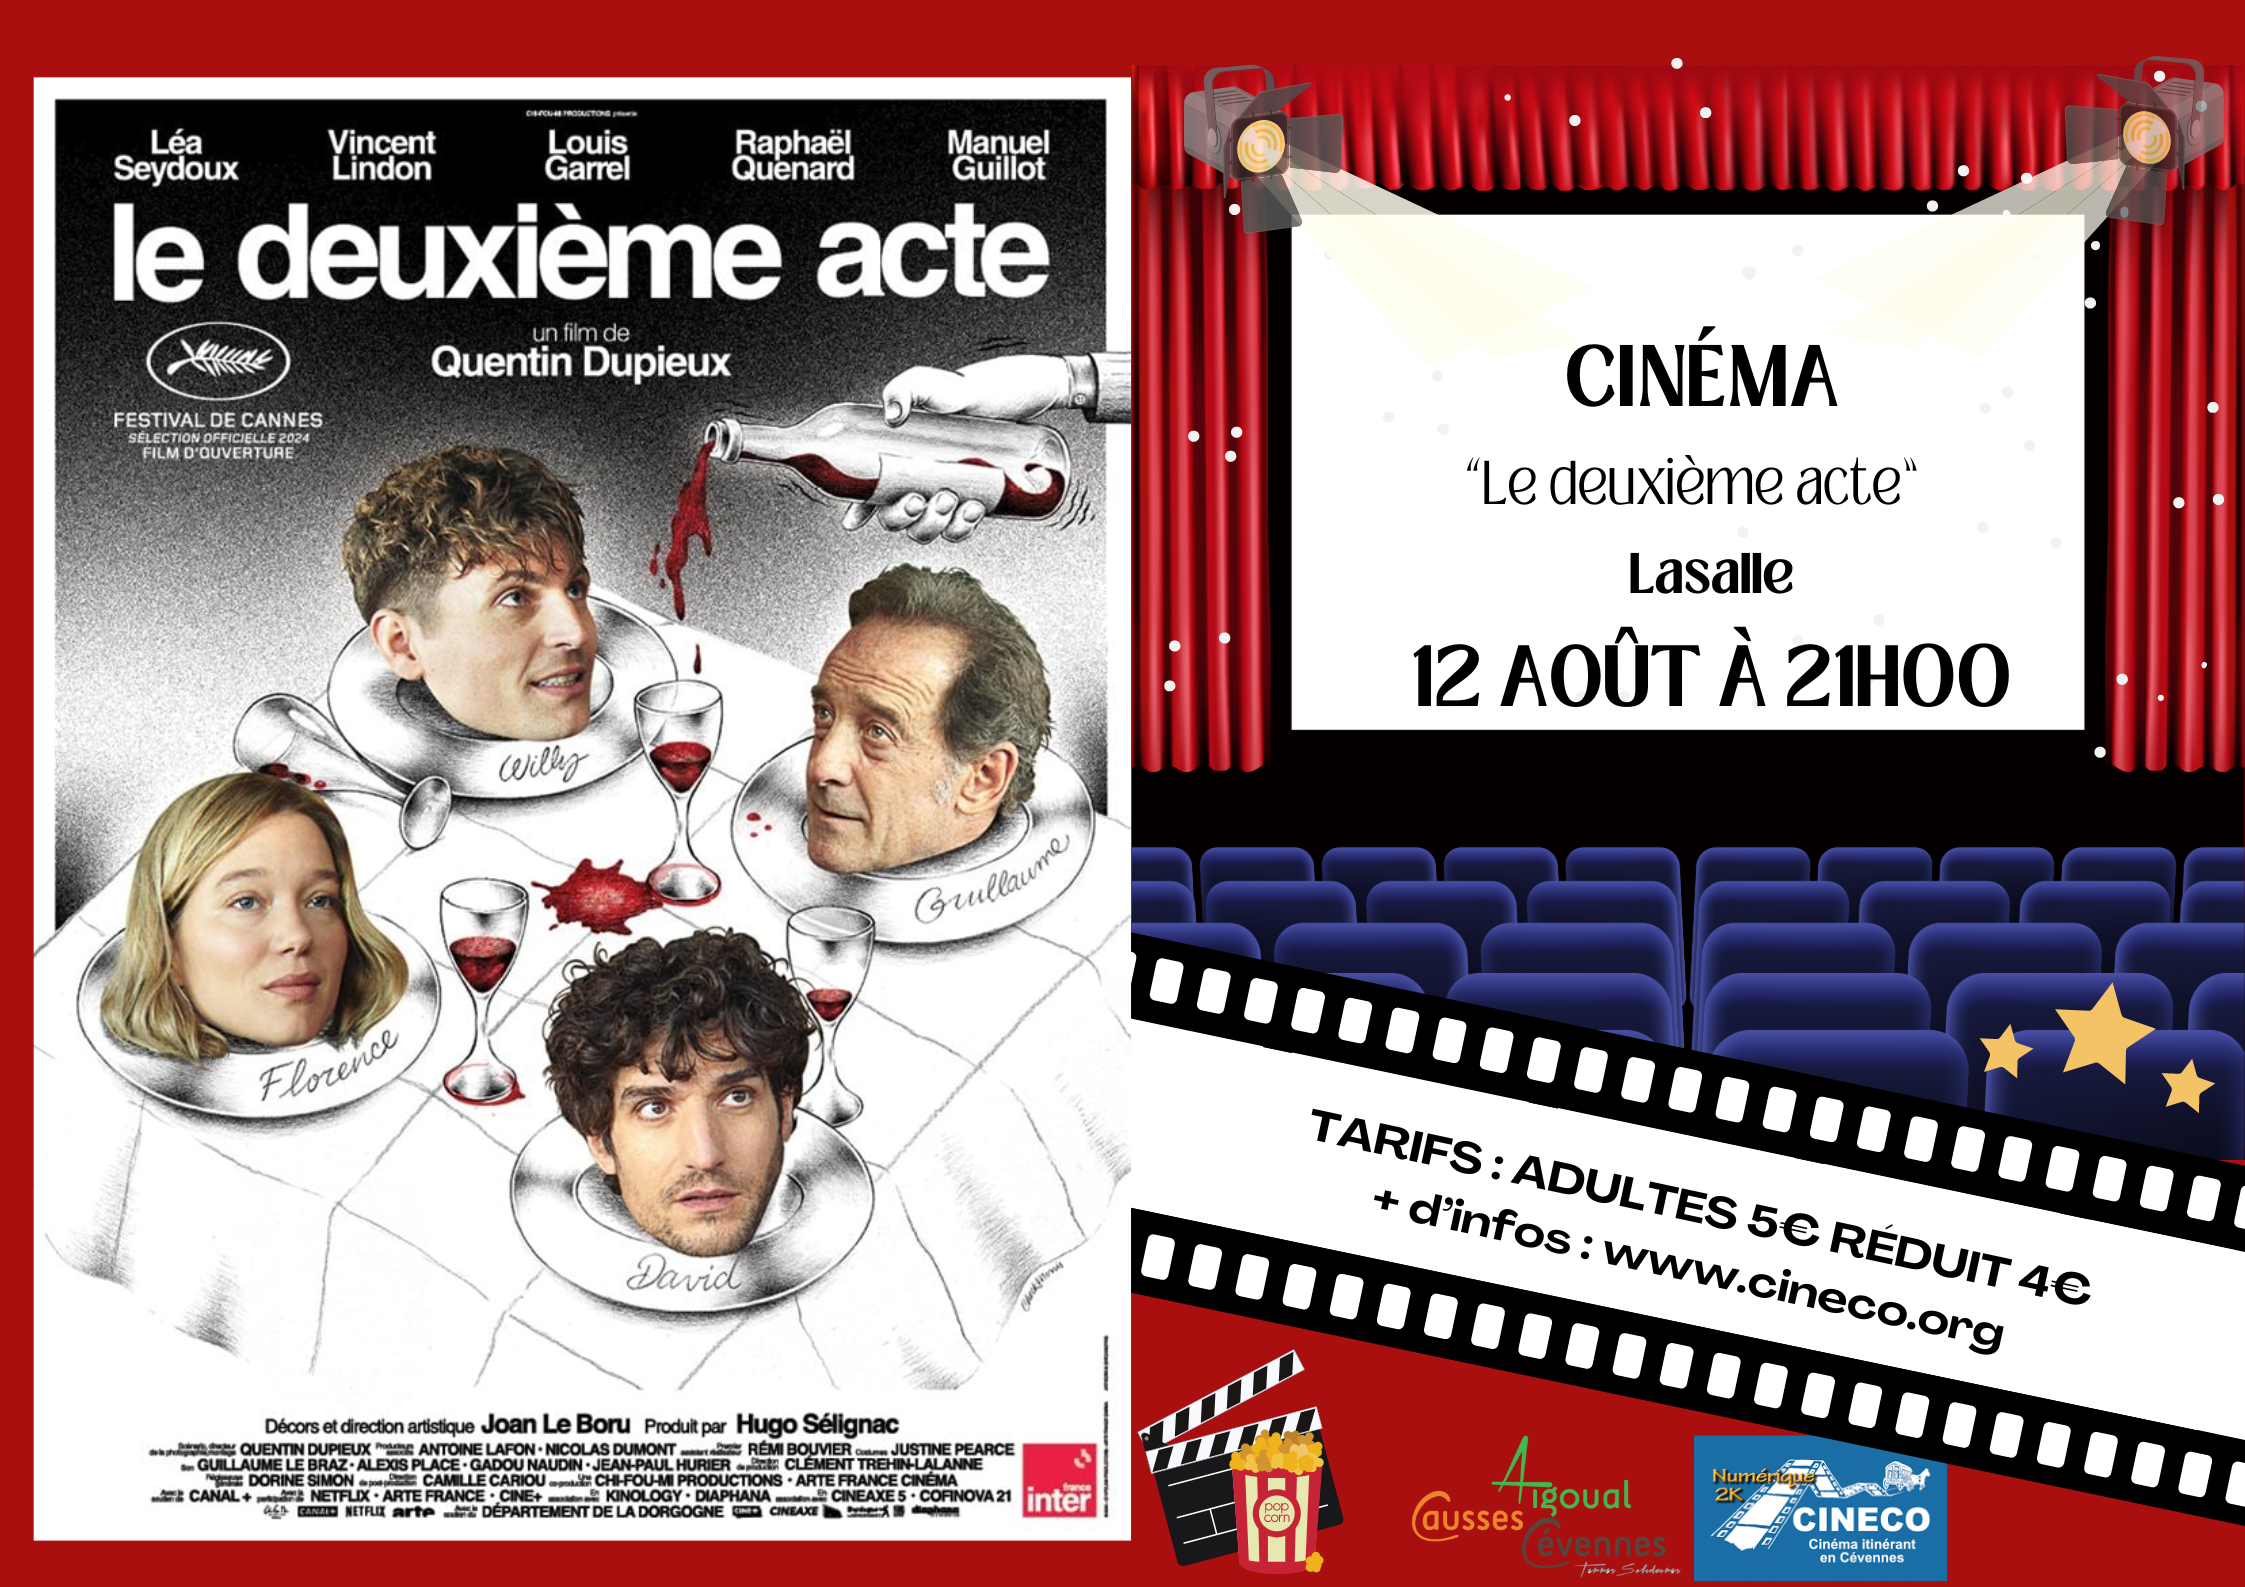 ÉVÉNEMENT Cinéma 12/08 – Lasalle